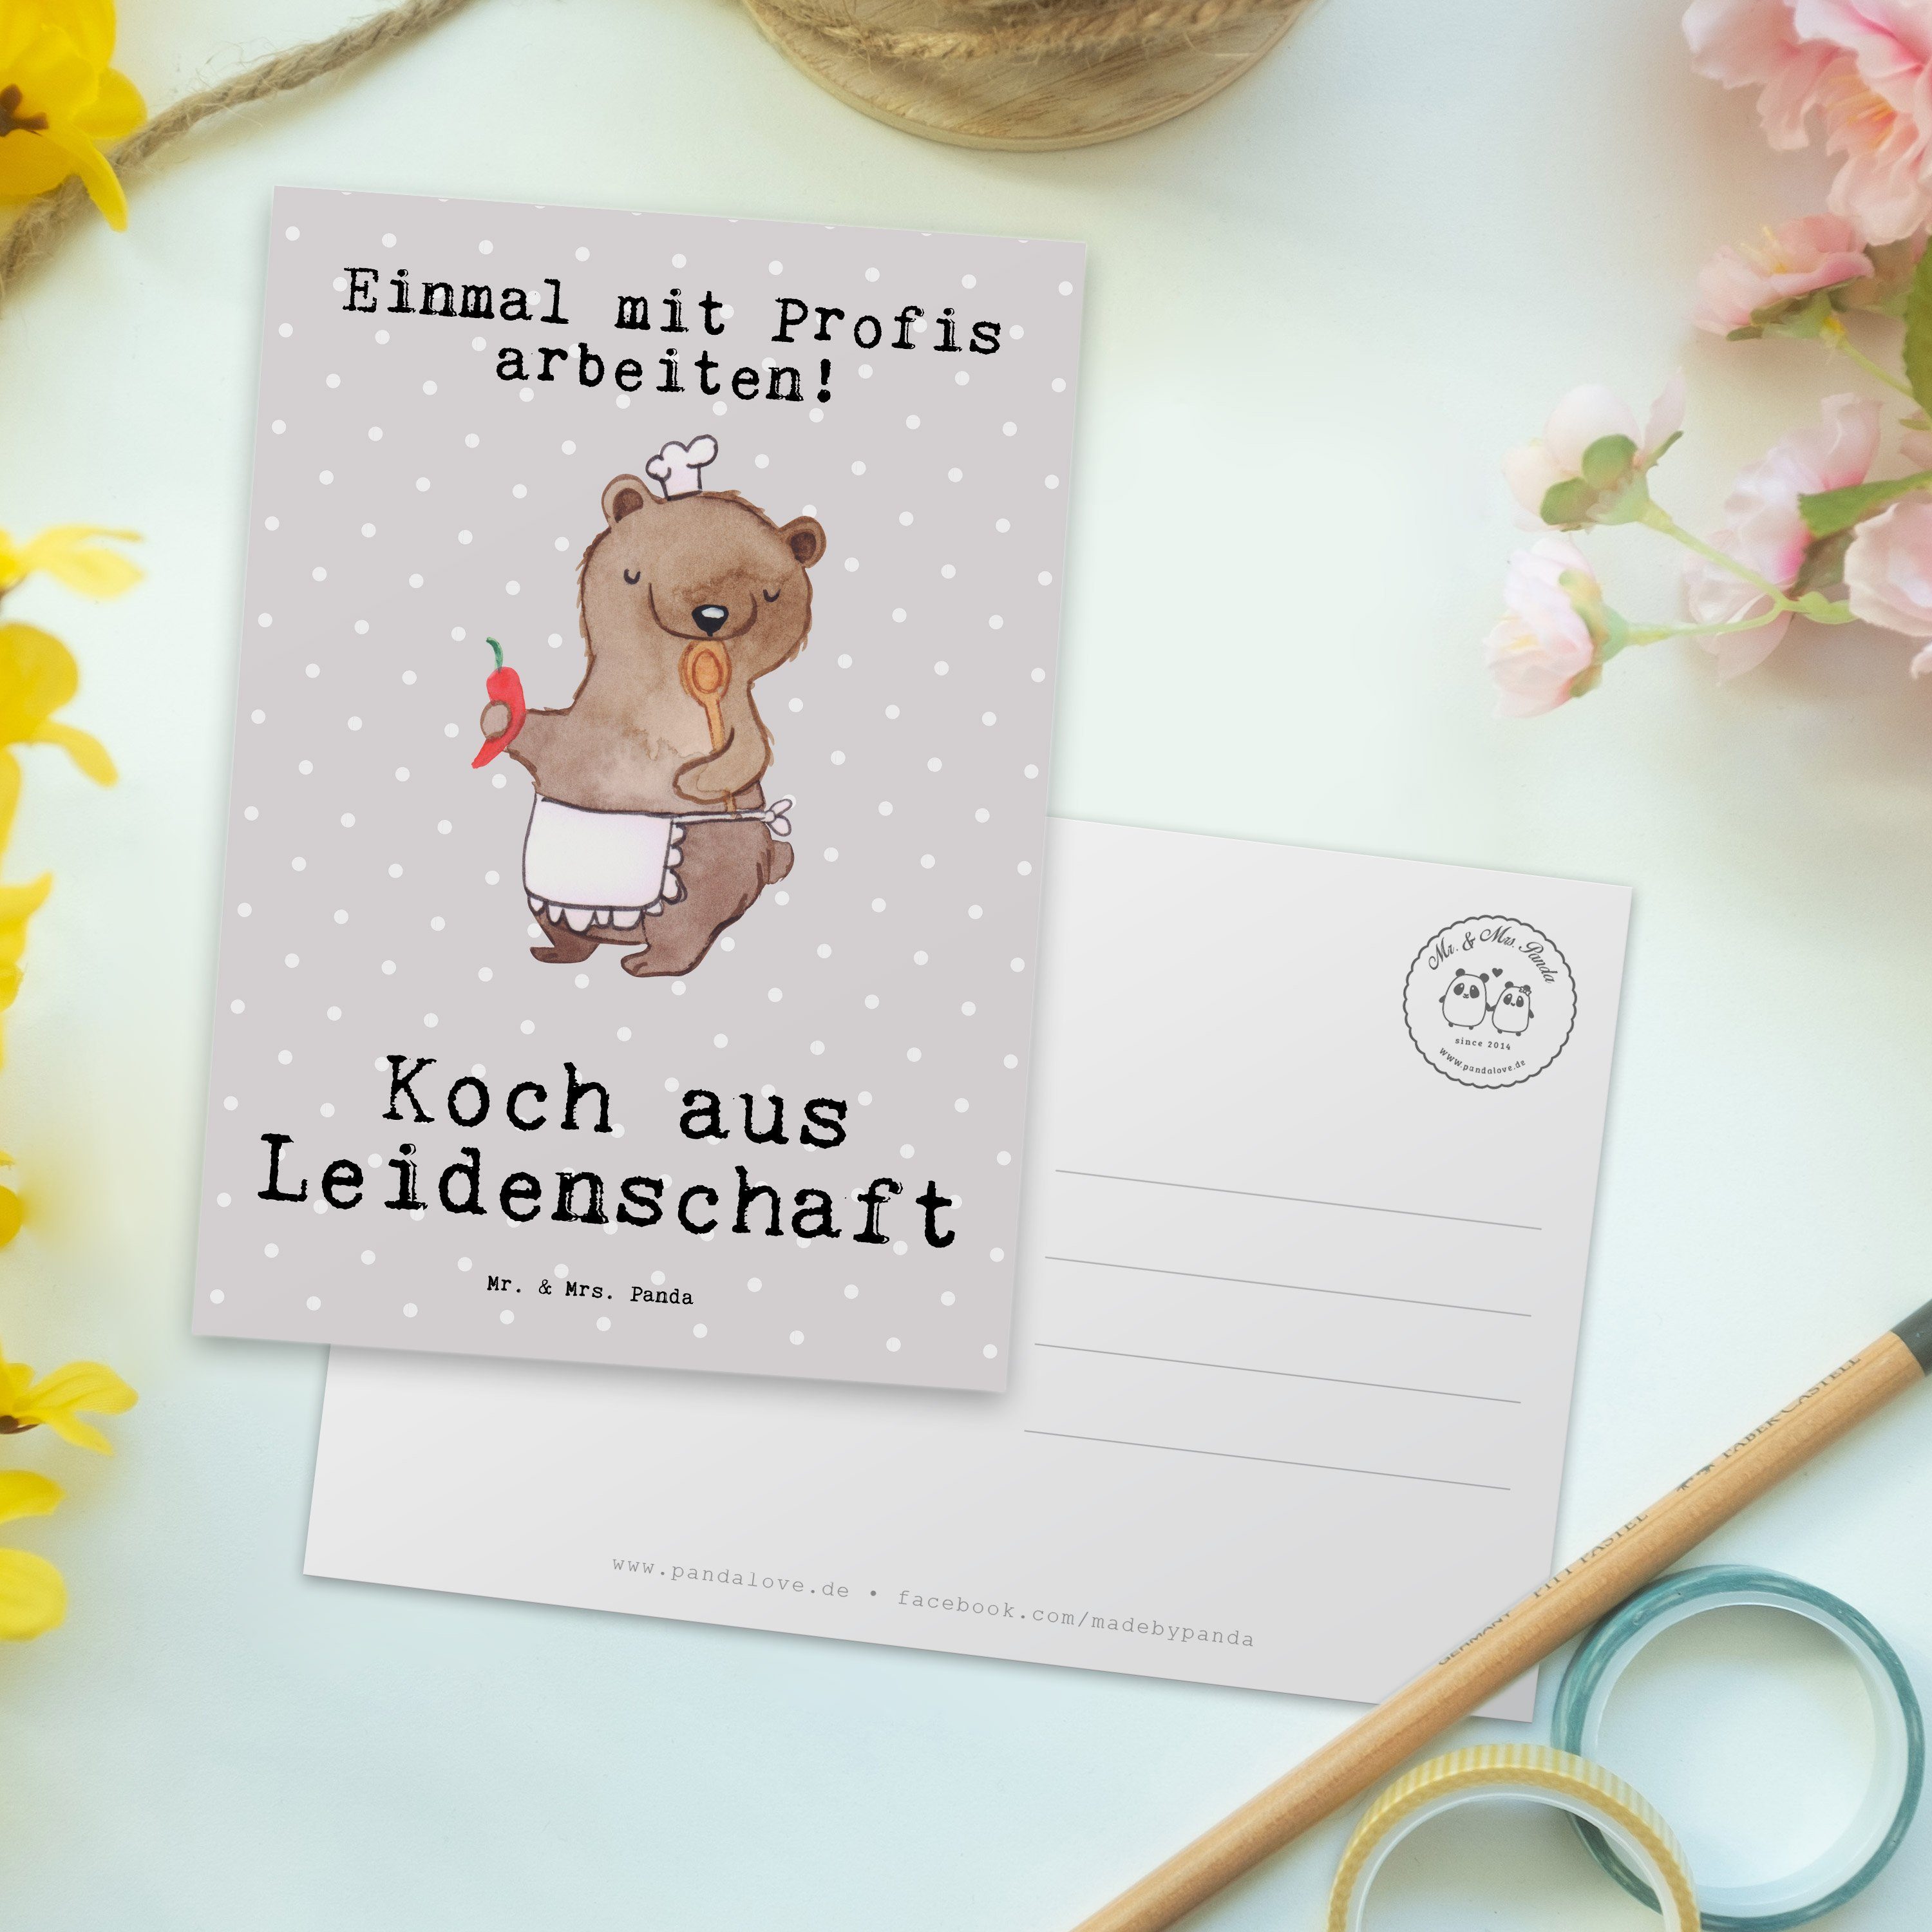 Grau G aus Rente, Mr. Mrs. - Panda Koch - Pastell & Leidenschaft Ausbildung, Geschenk, Postkarte